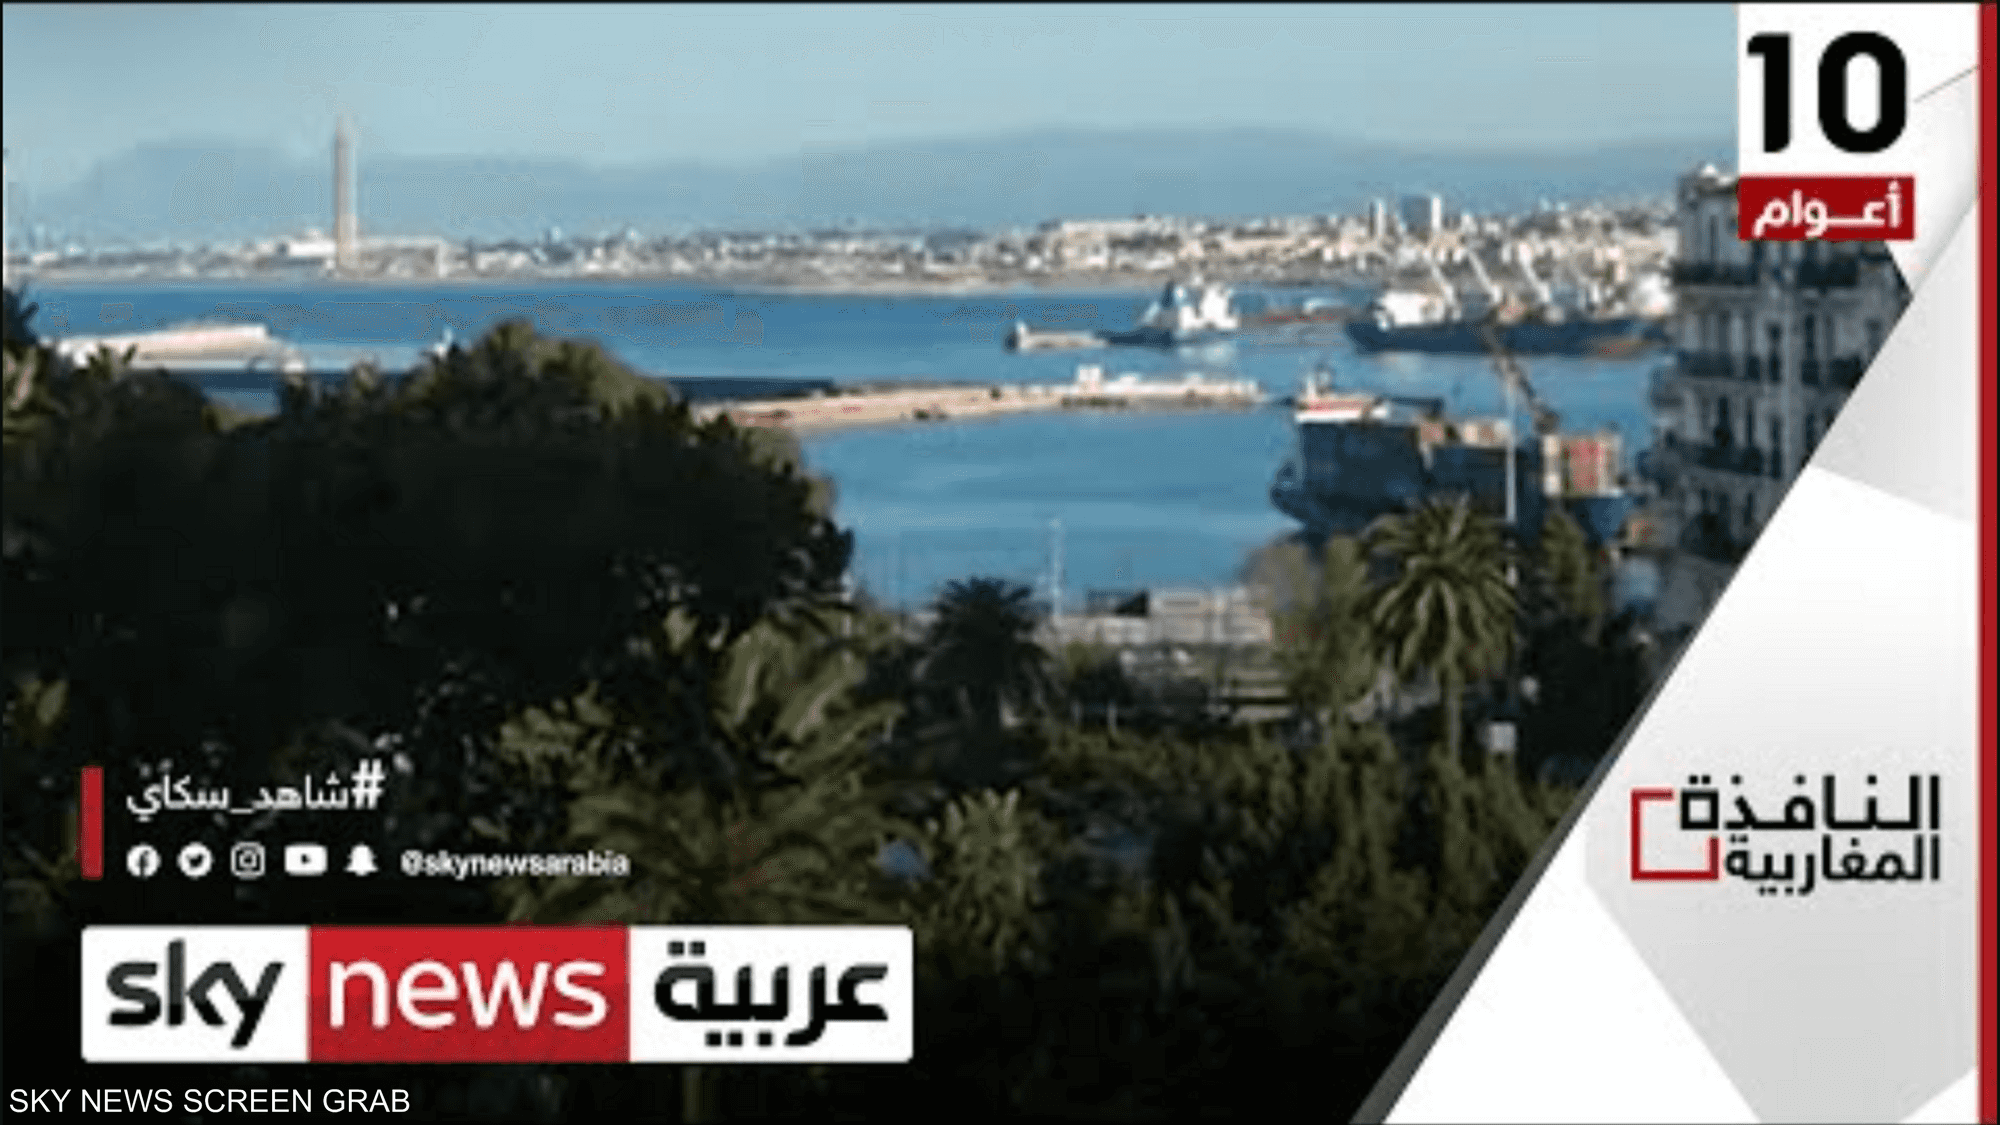 الجزائر والصين توقعان اتفاقا للتنقيب عن النفط